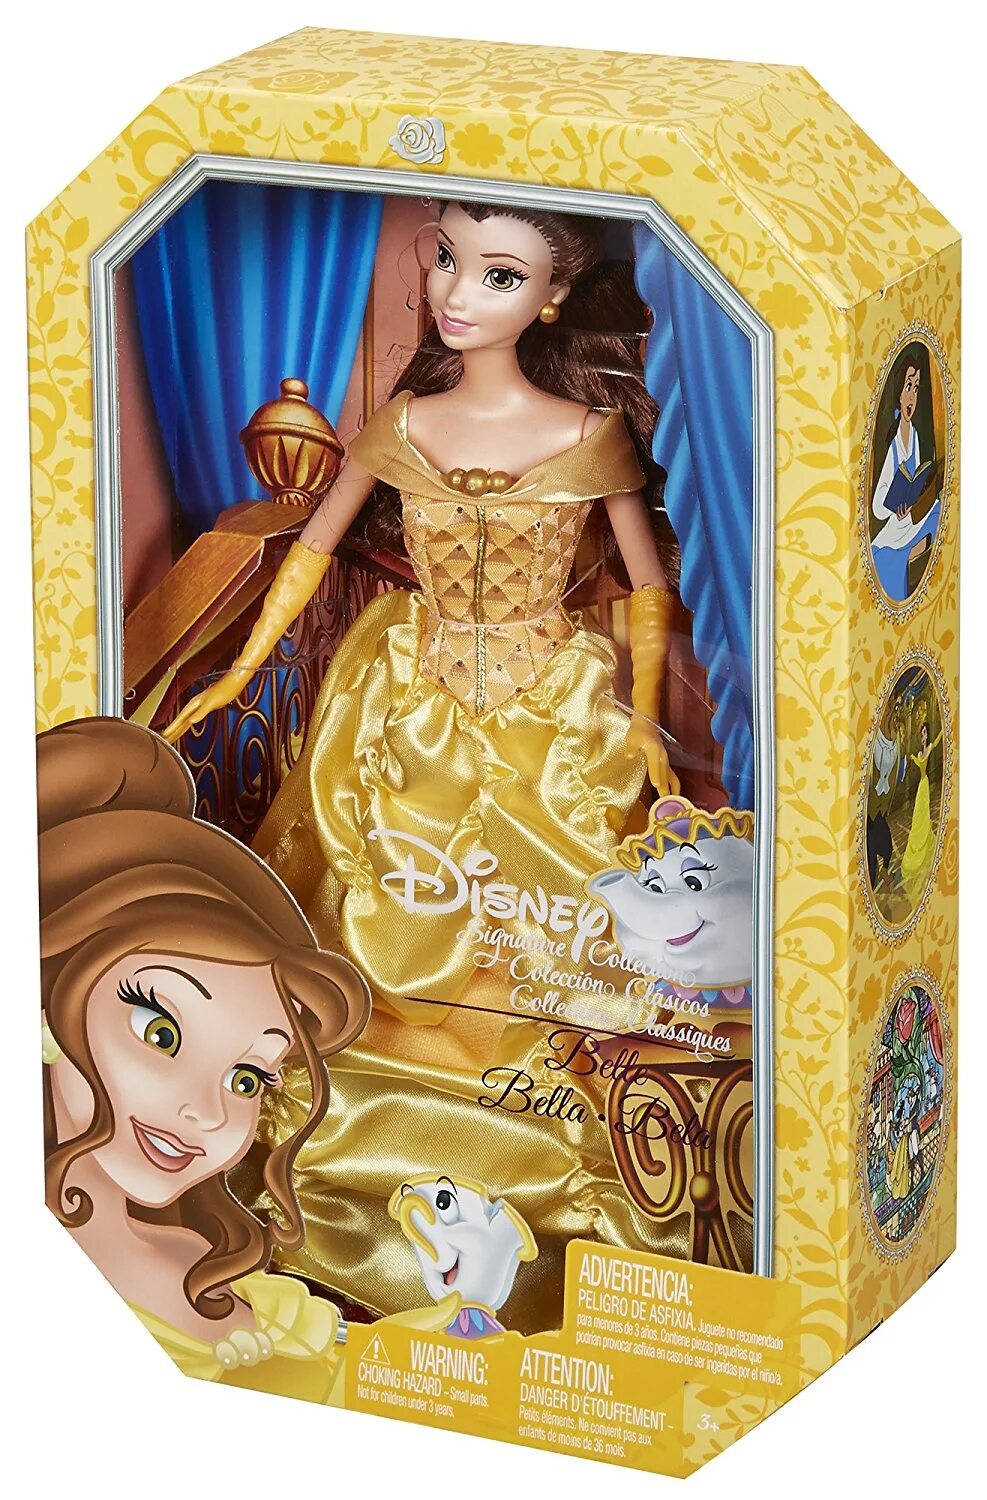 Принцессы диснея купить. Кукла Дисней Бэль Бель. Куклы принцессы Дисней Белль. Кукла Disney Princess принцесса Дисней Белль. Mattel cdb51 коллекционная кукла принцесса Диснея Белль,.